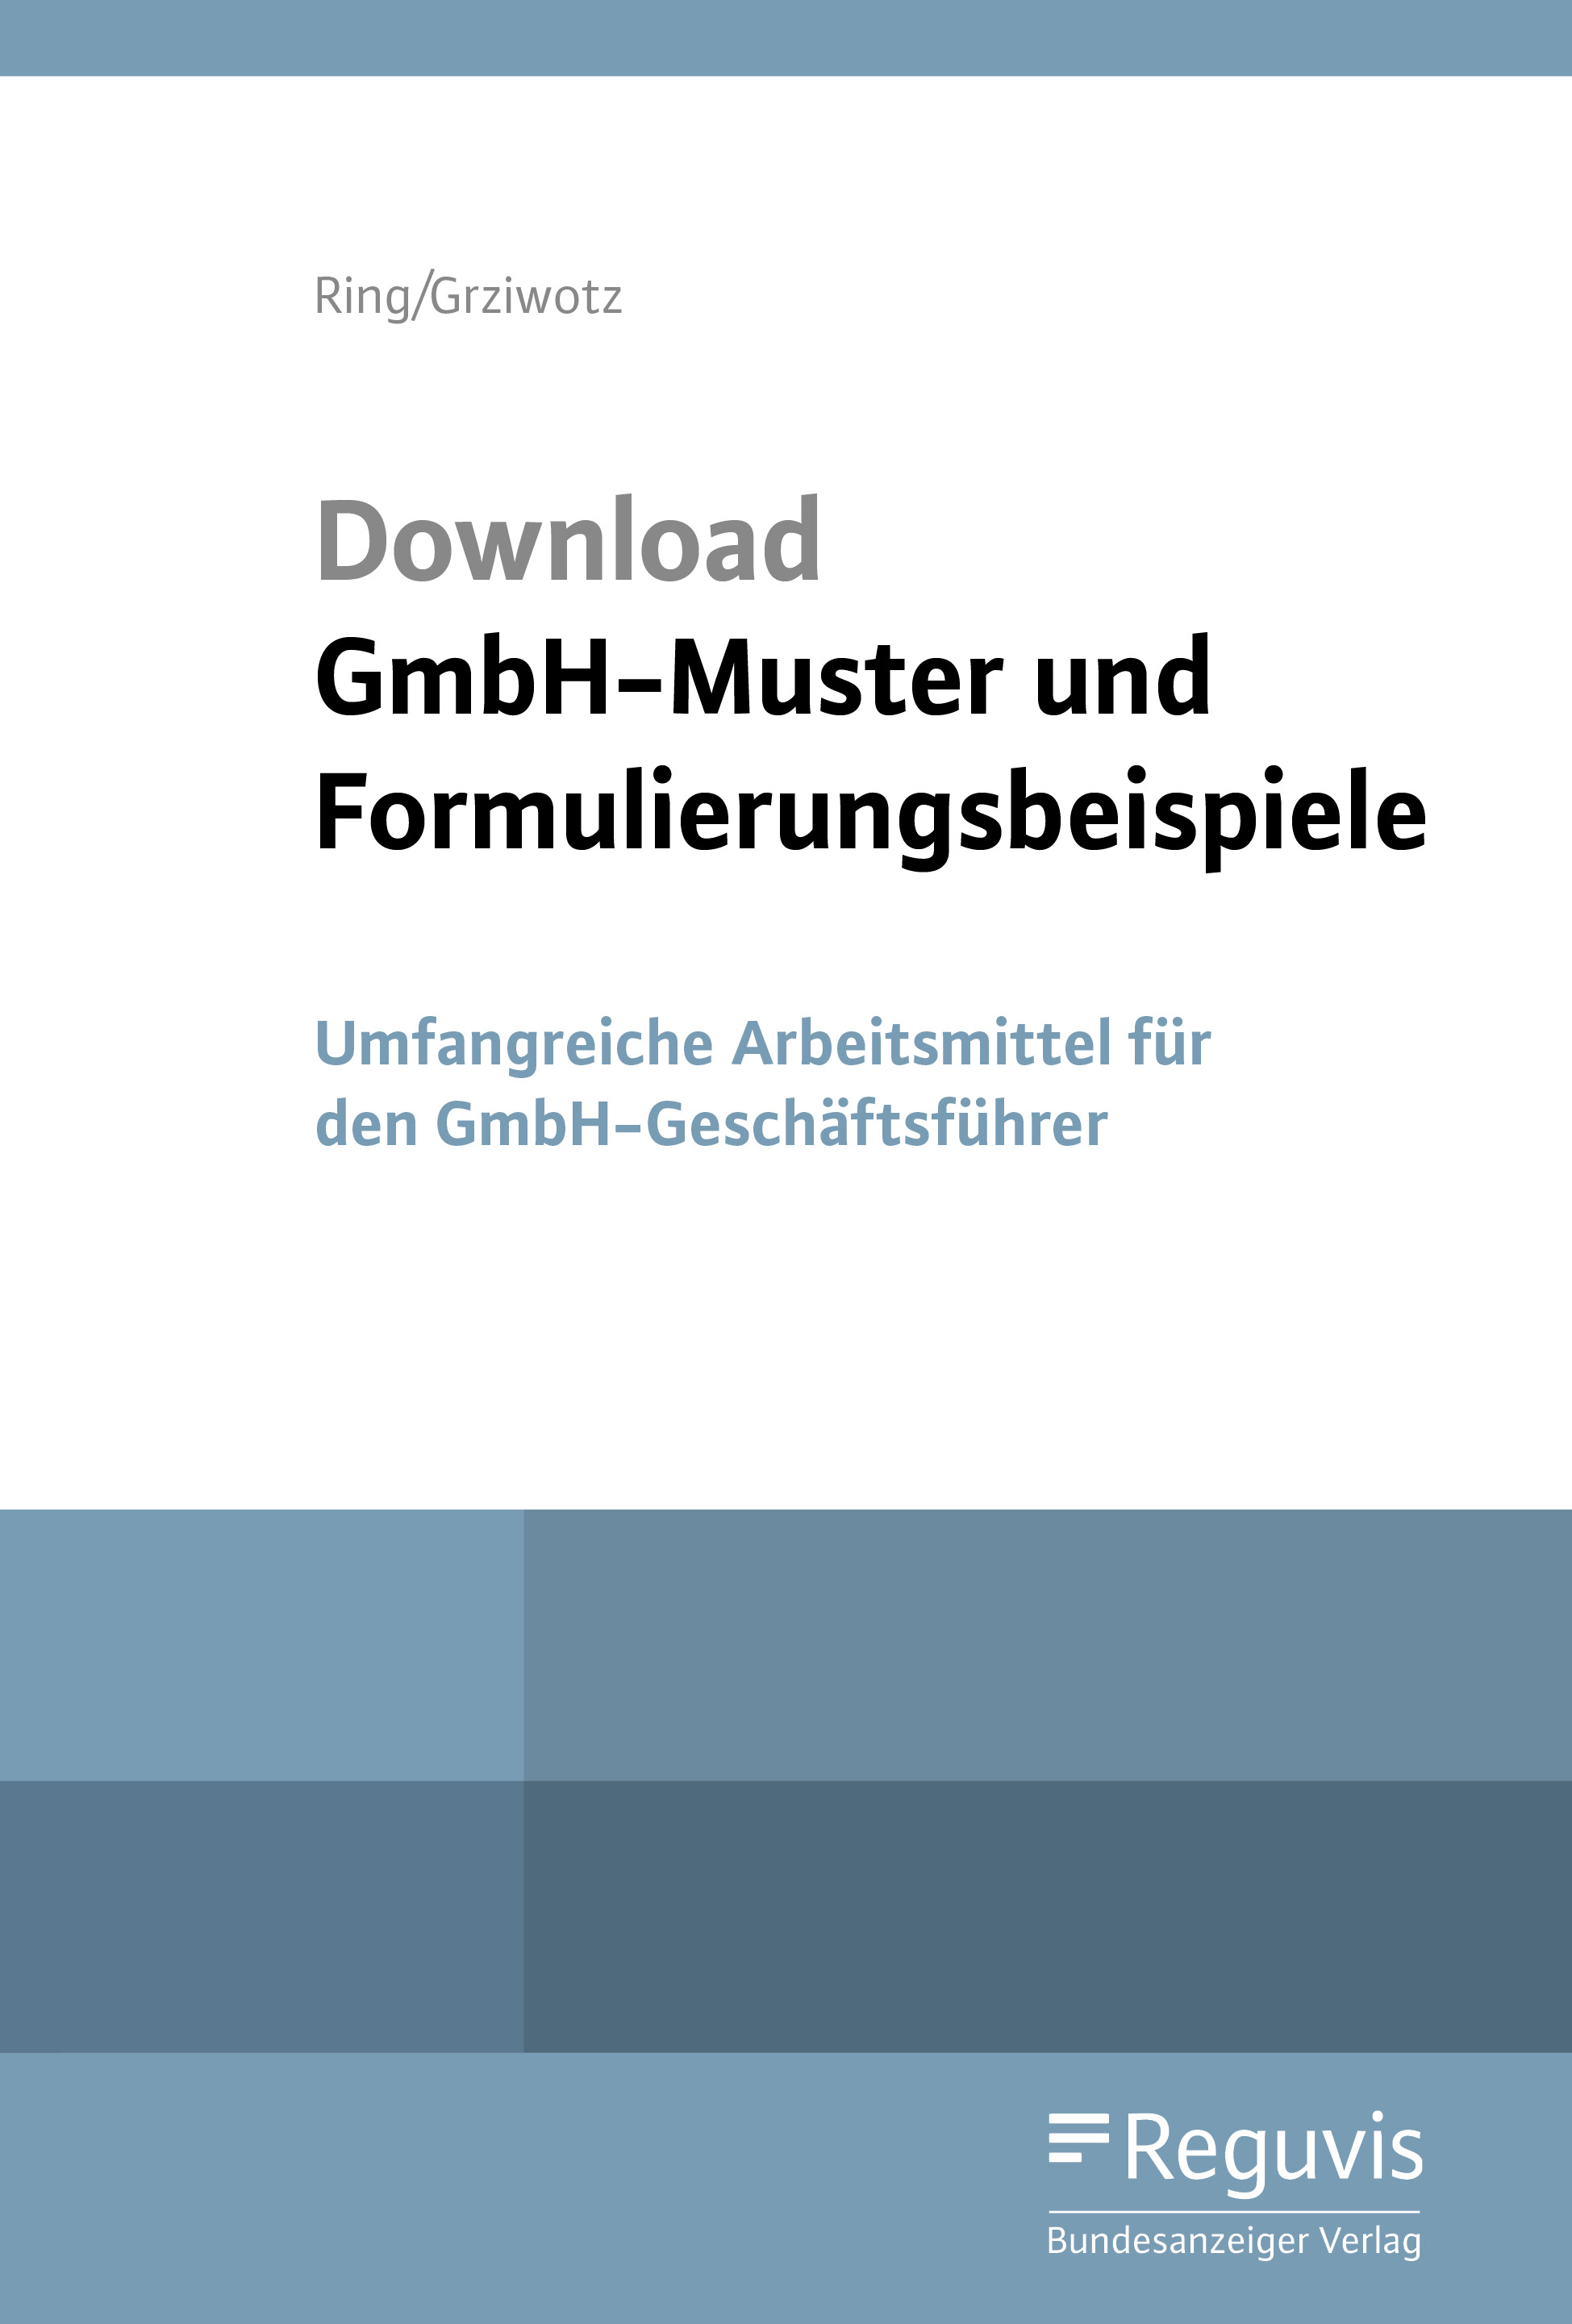 GmbH-Muster und Formulierungsbeispiele - Download